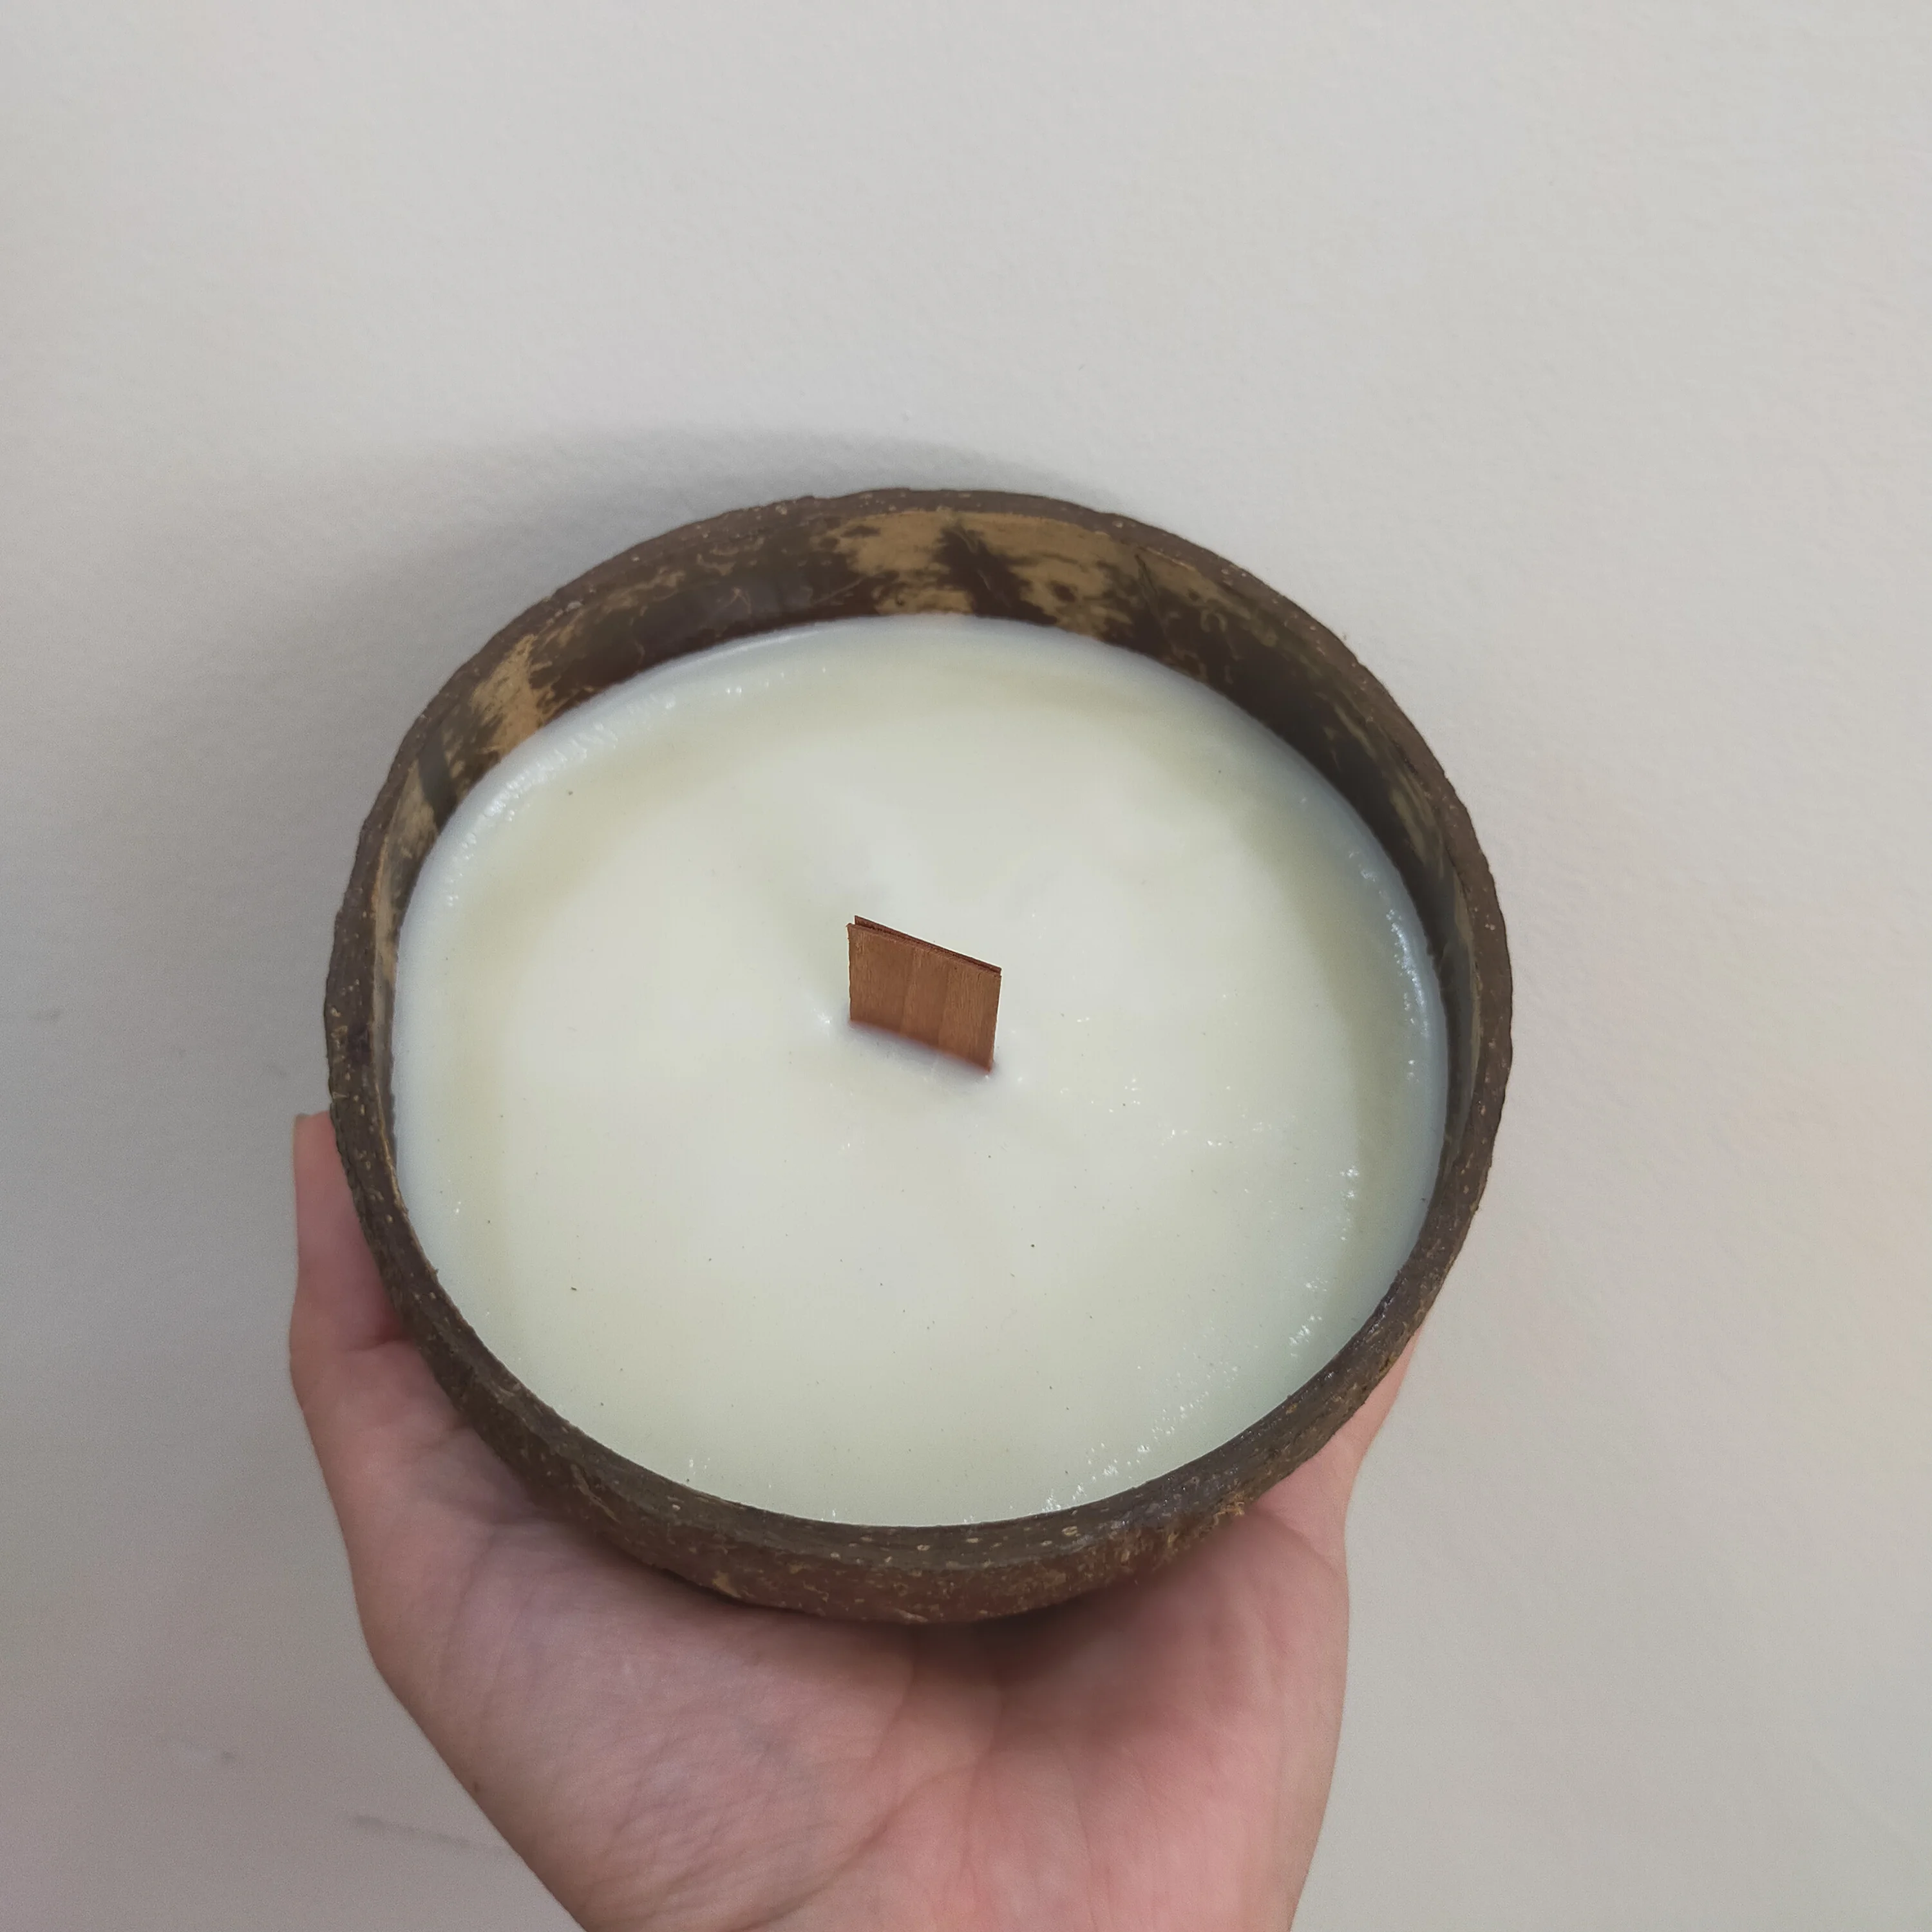 Свеча из скорлупы кокоса, соевый воск, Пальмовый воск, Экологичная чаша из скорлупы кокоса ручной работы, вьетнамская Кокосовая свеча, Ароматизированная